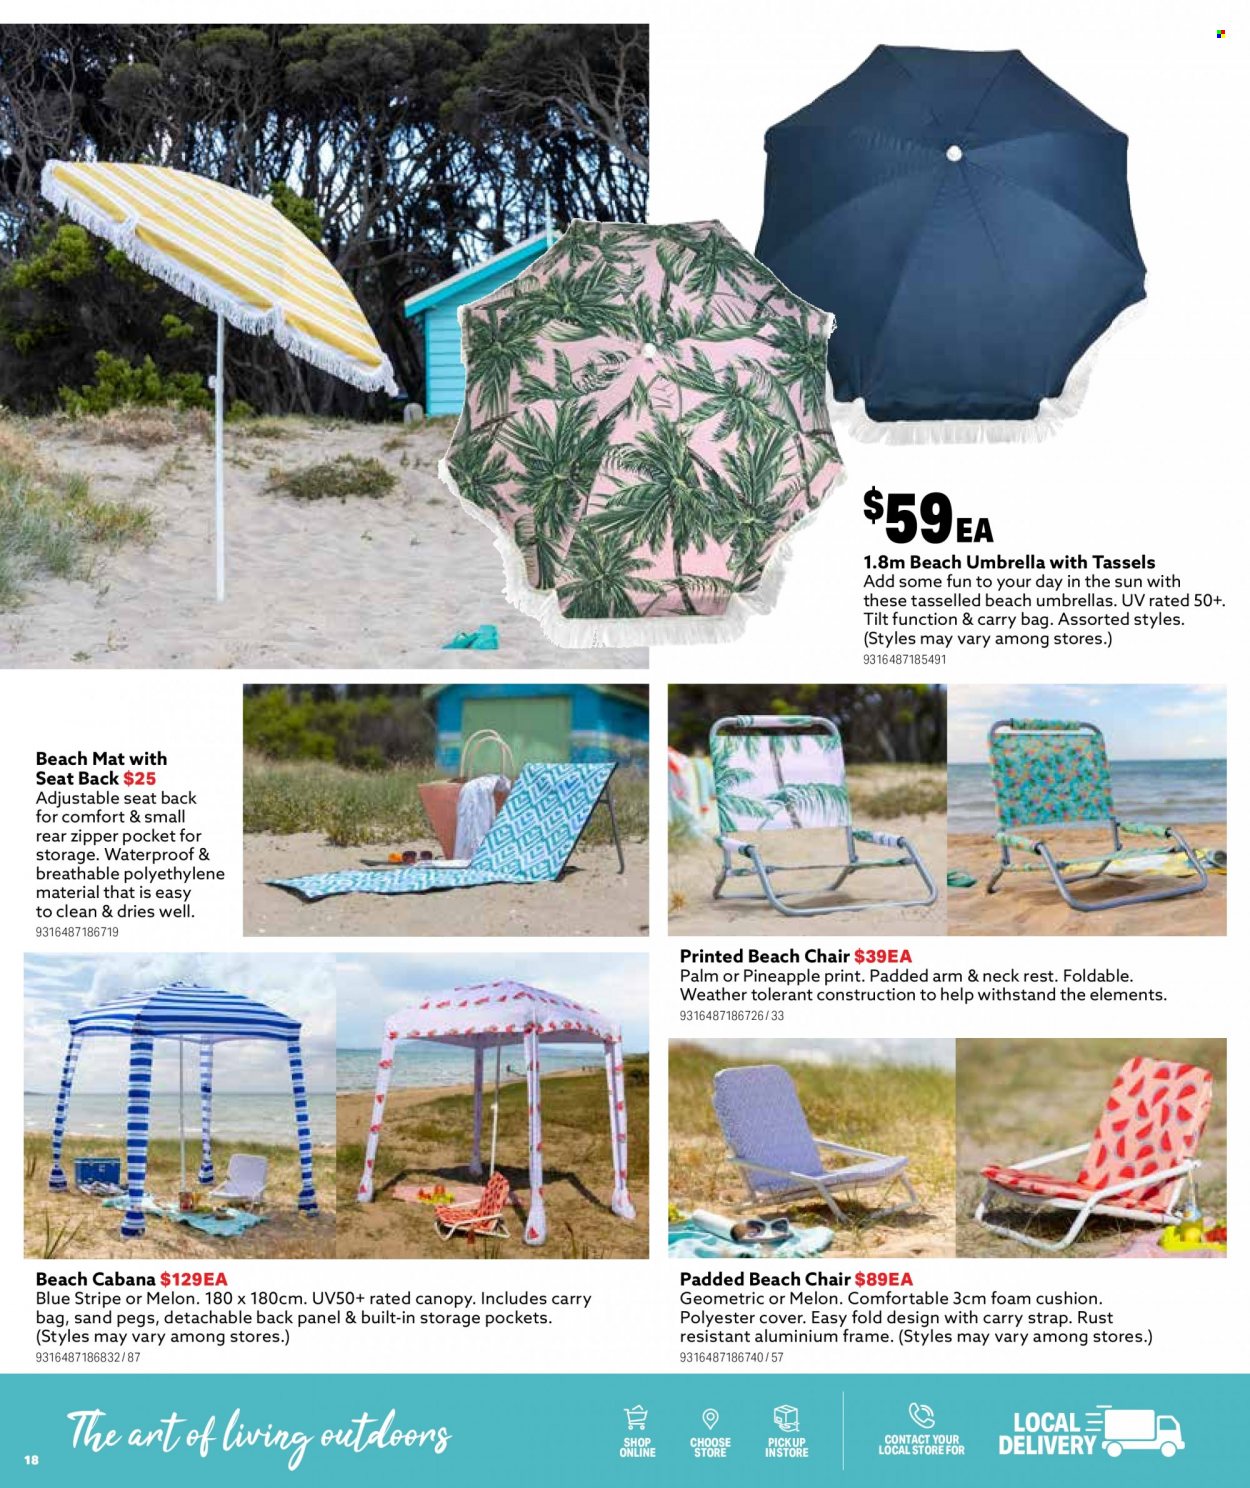 thumbnail - Mitre 10 Catalogue - 14 Sep 2022 - 31 Dec 2022 - Sales products - cushion, chair, beach chair, aluminium frame, umbrella, beach umbrella. Page 18.